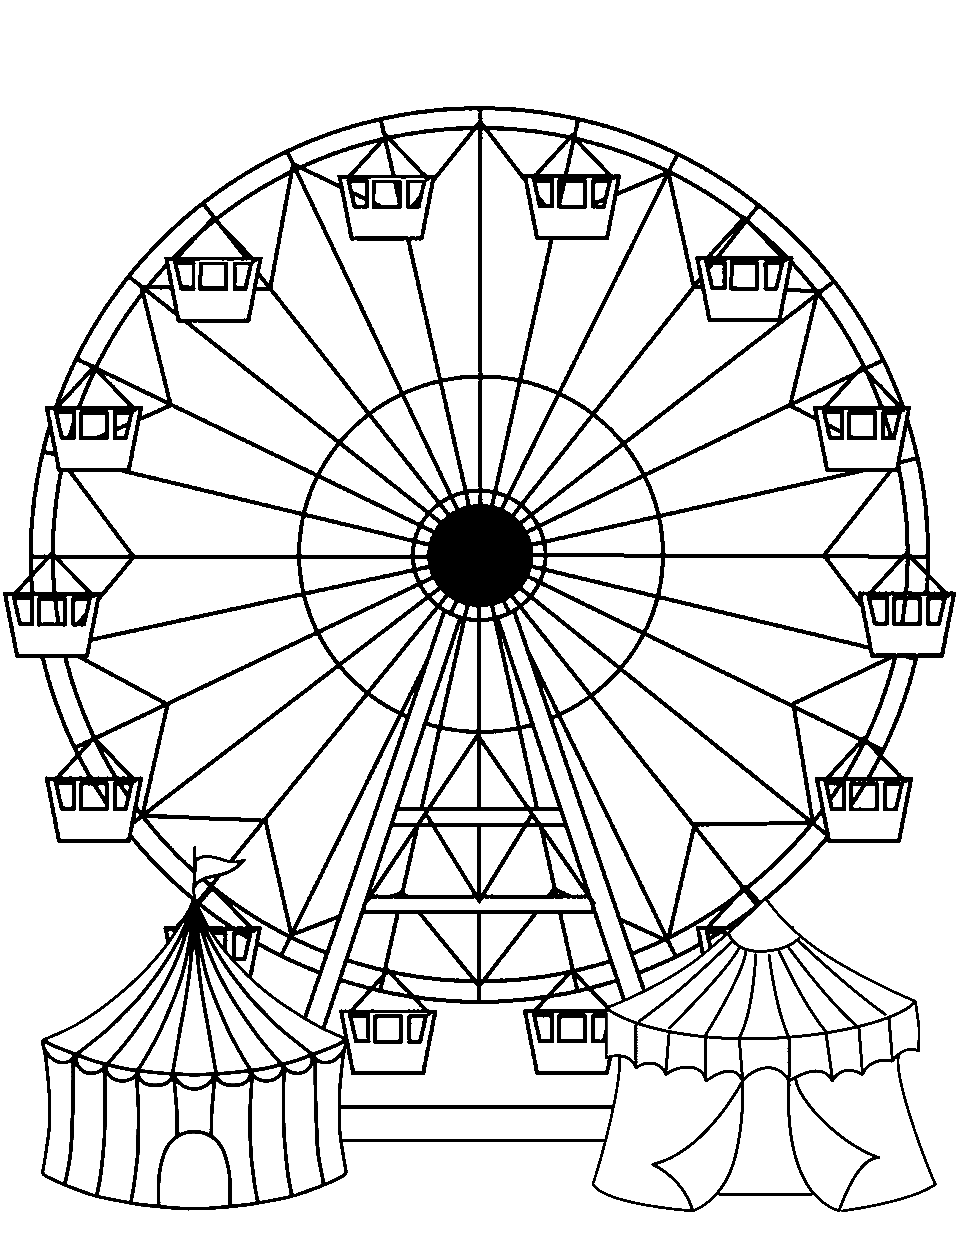 Fun at the Fair Coloring Page - A detailed Ferris wheel in a fair.